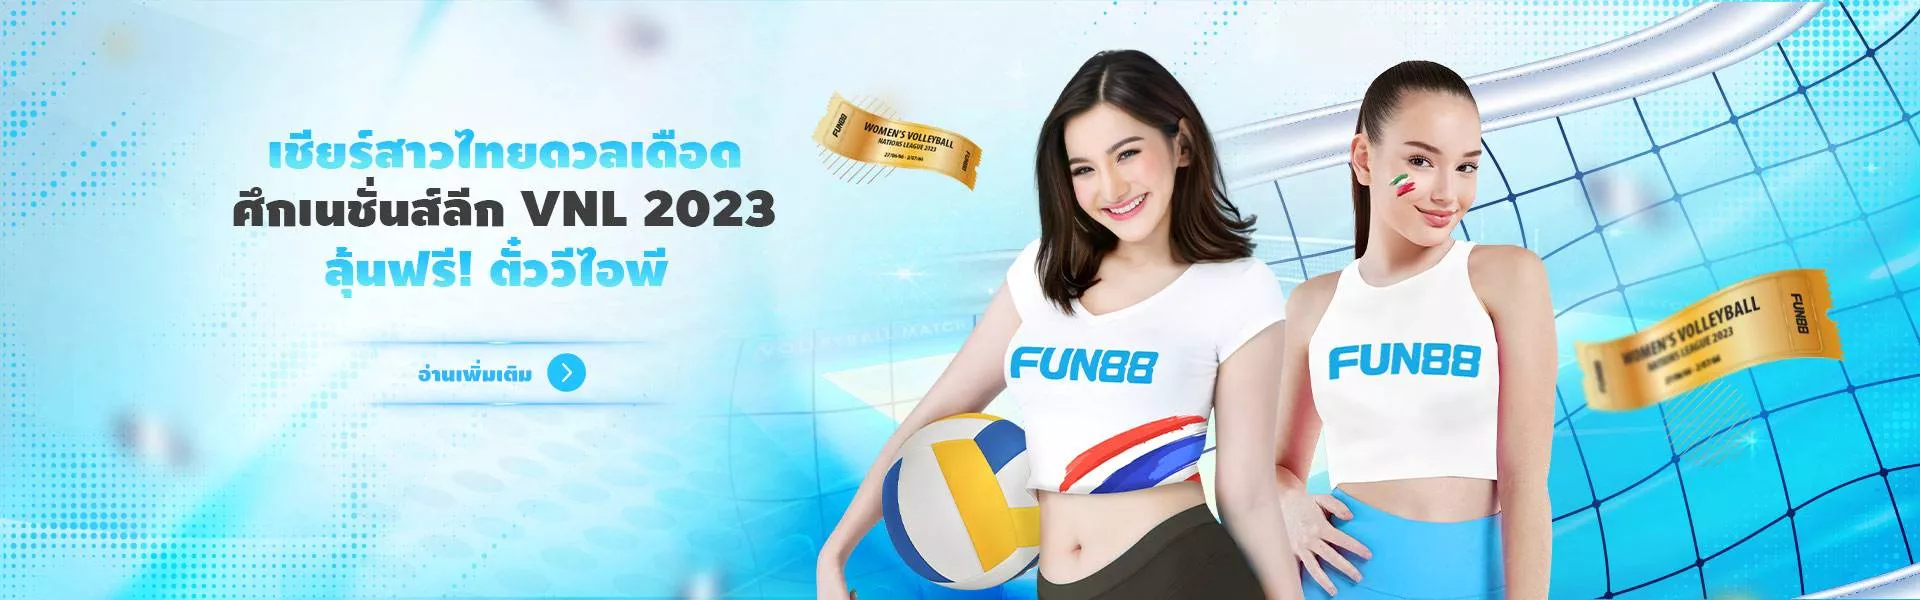 FUN88 Asia โปรโมชั่นแจกตั๋วดูวอลเล่ย์บอลสาวไทย